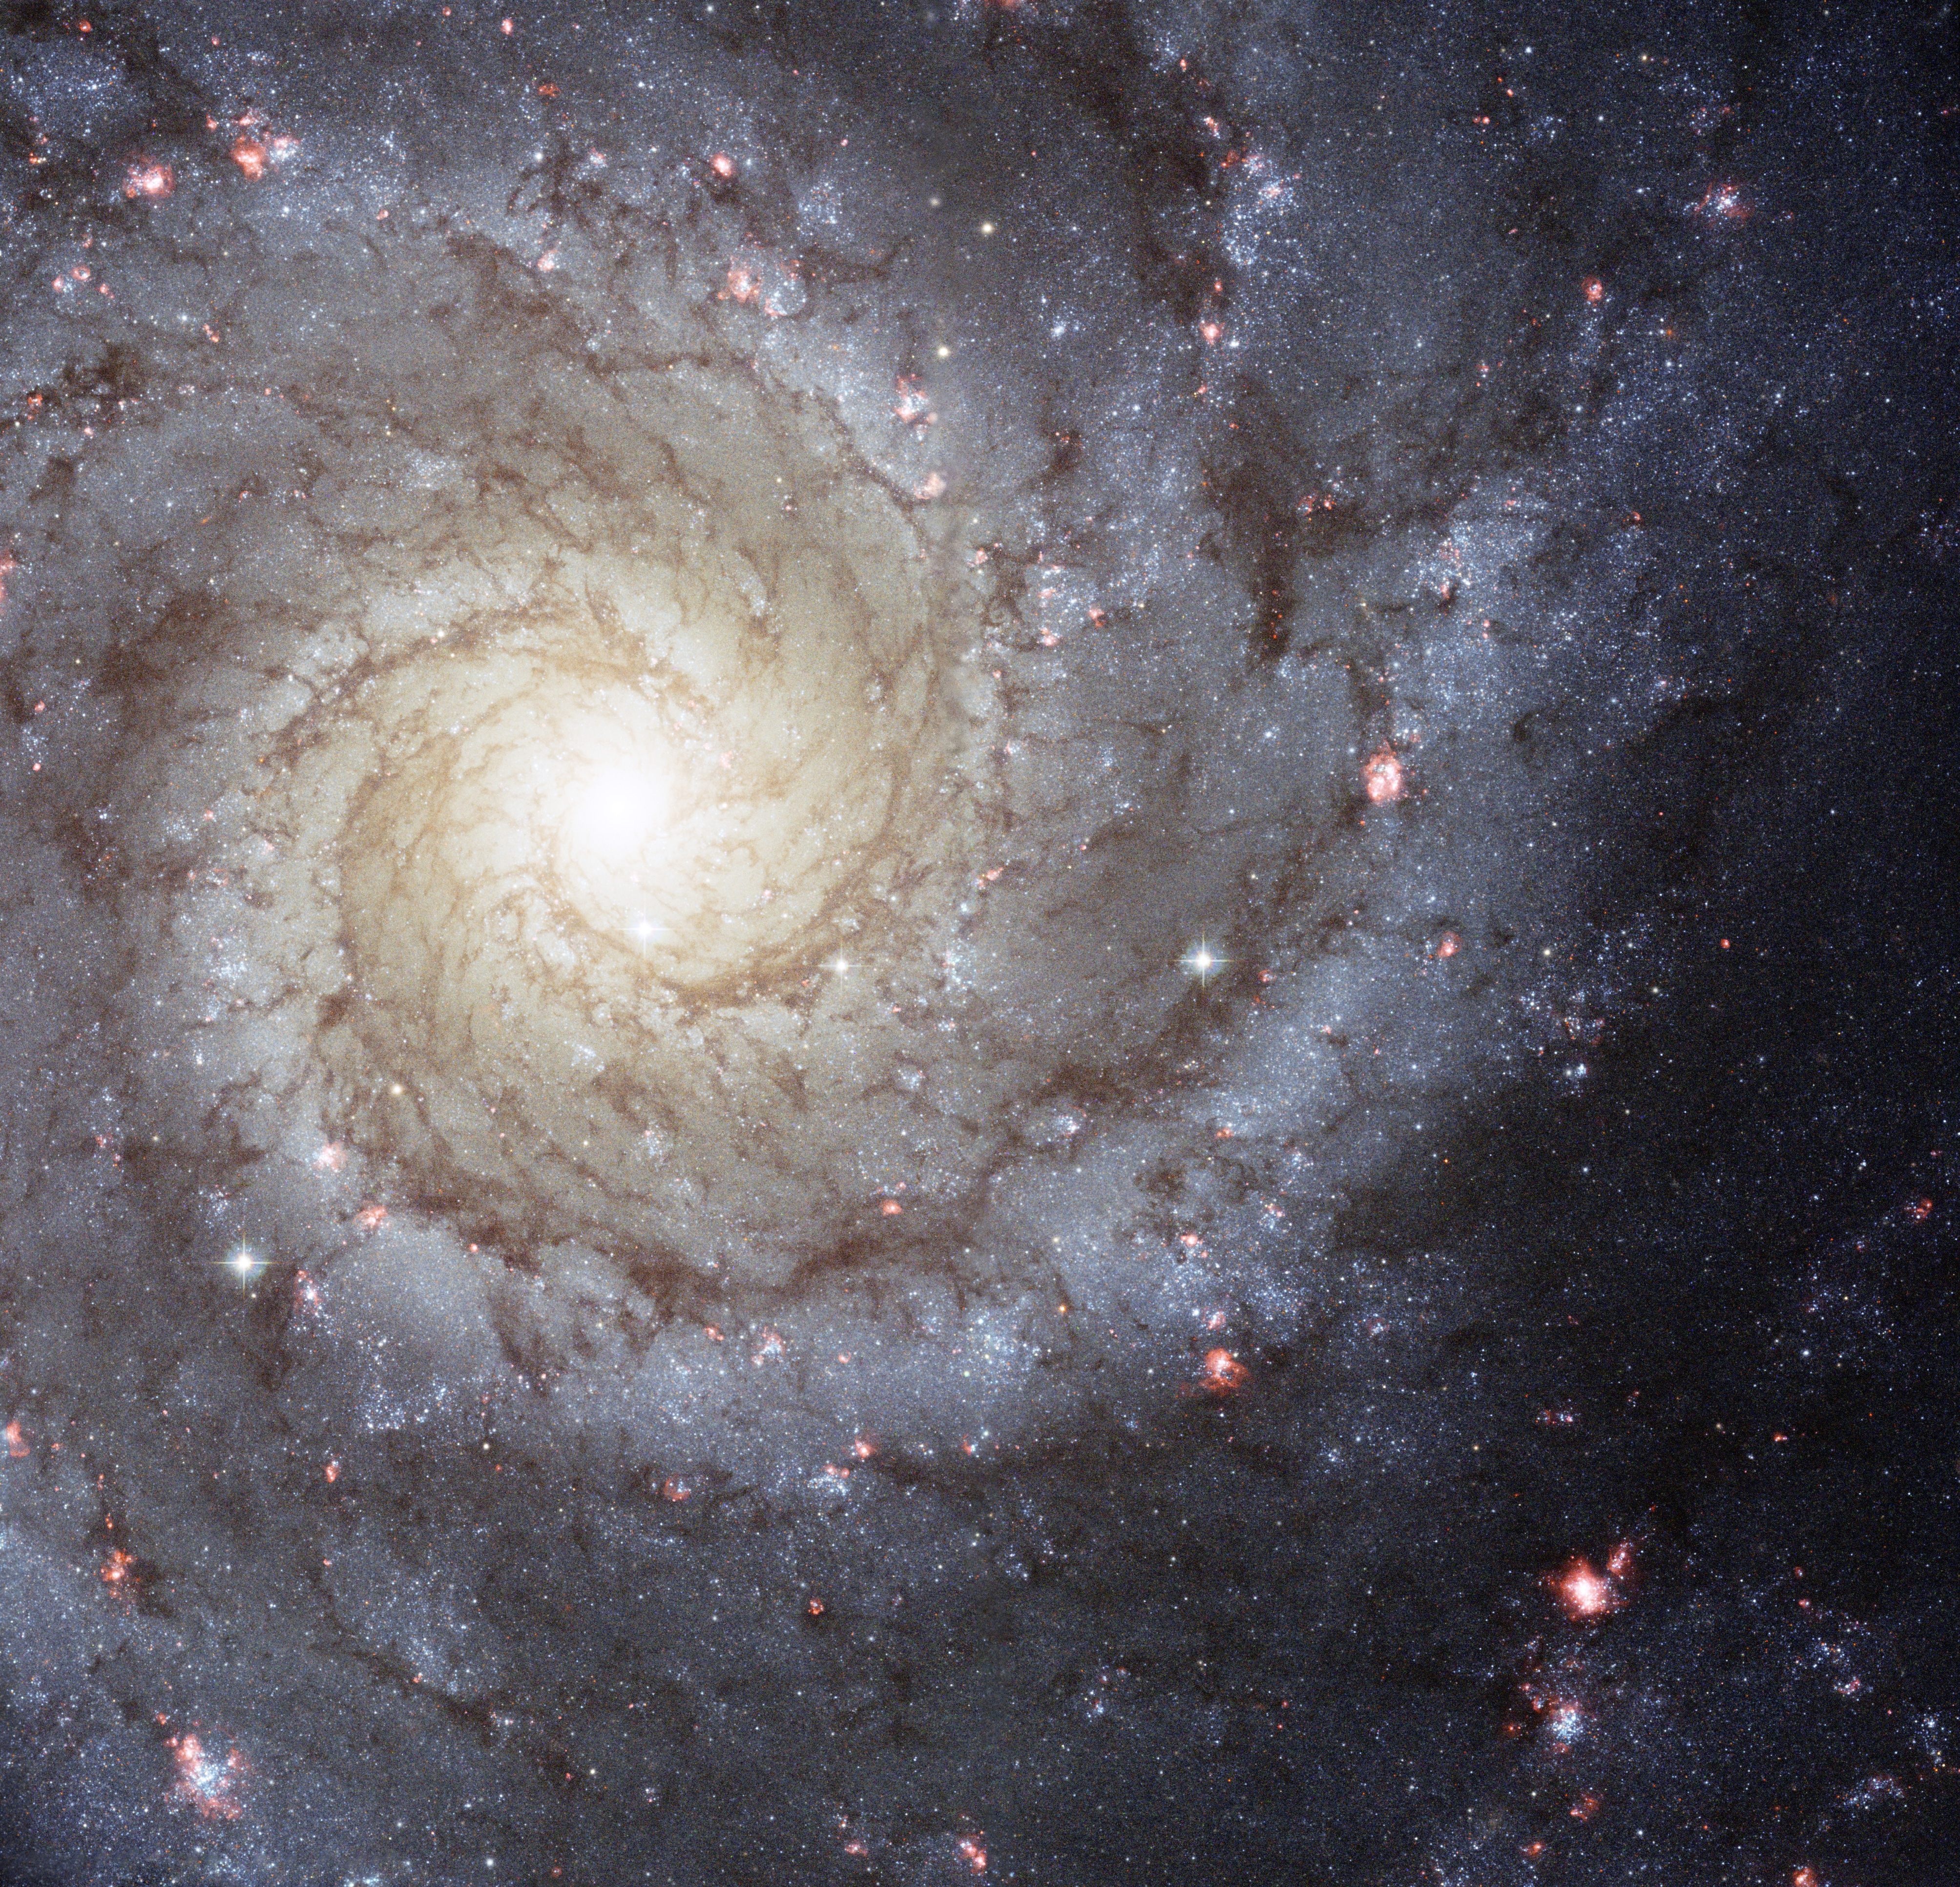 Images | ESA/Hubble